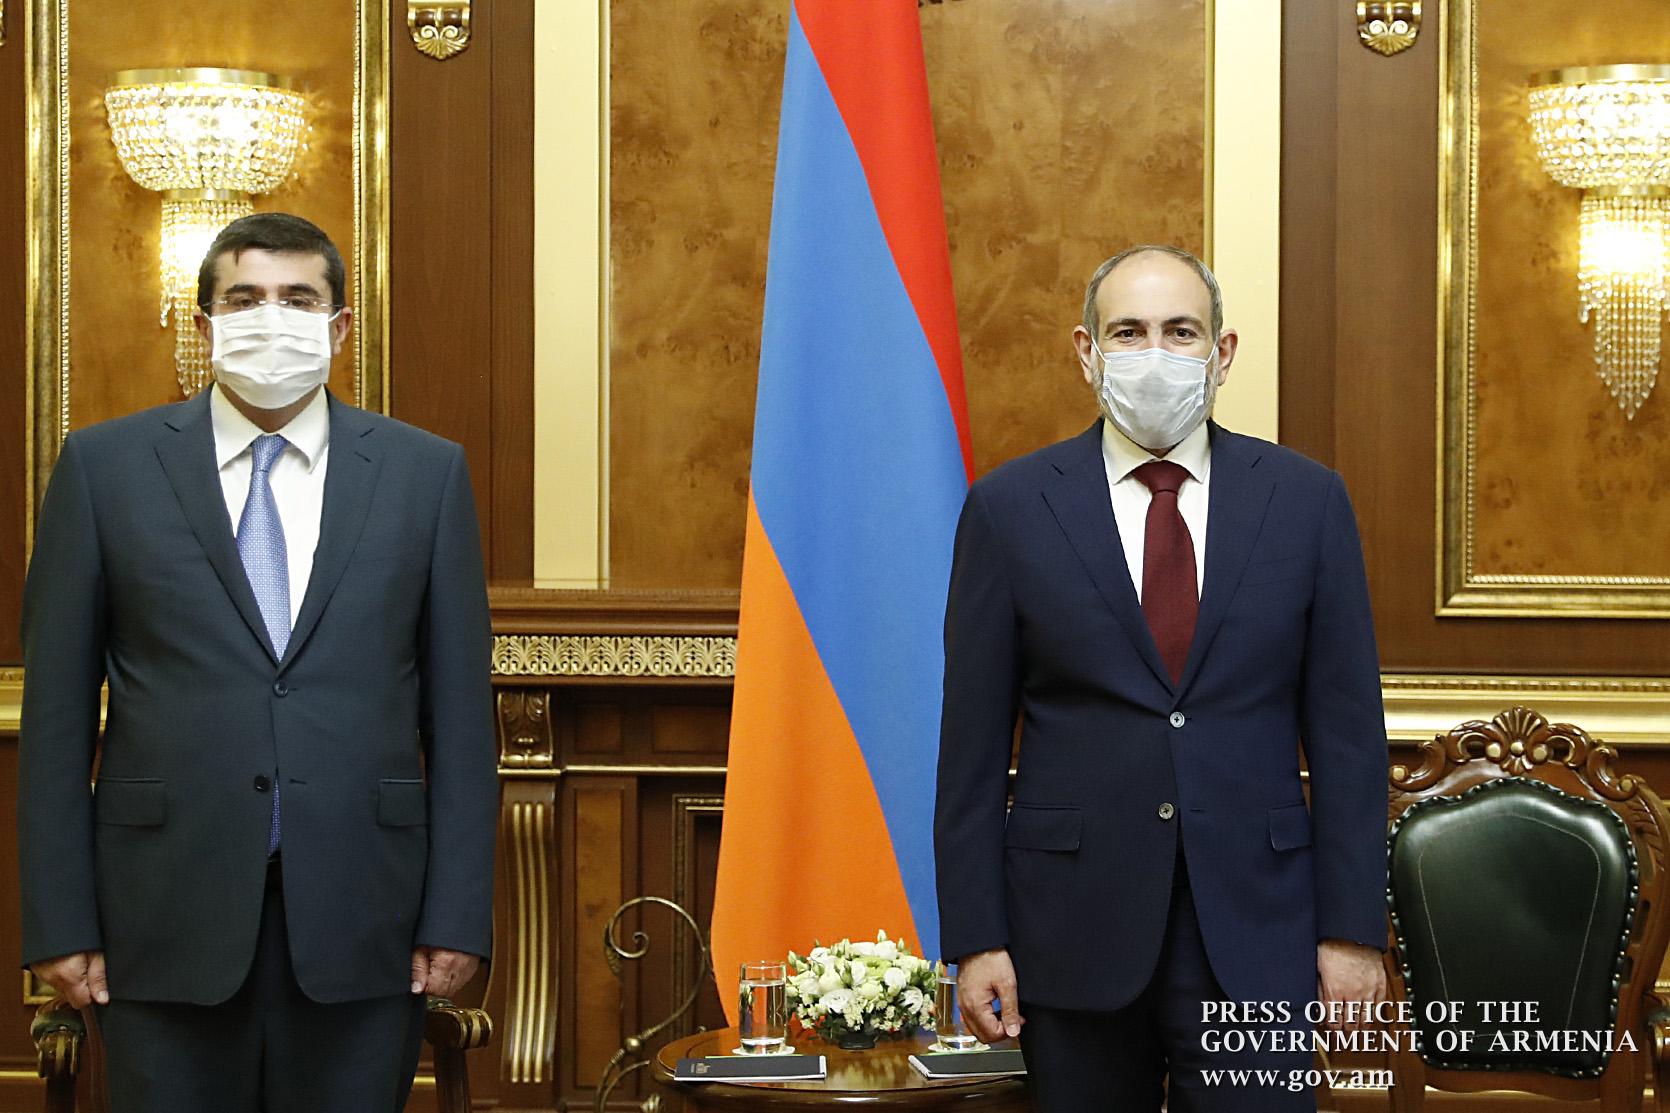 Երևանում տեղի է ունեցել Նիկոլ Փաշինյանի և Արայիկ Հարությունյանի առաջին պաշտոնական հանդիպումը